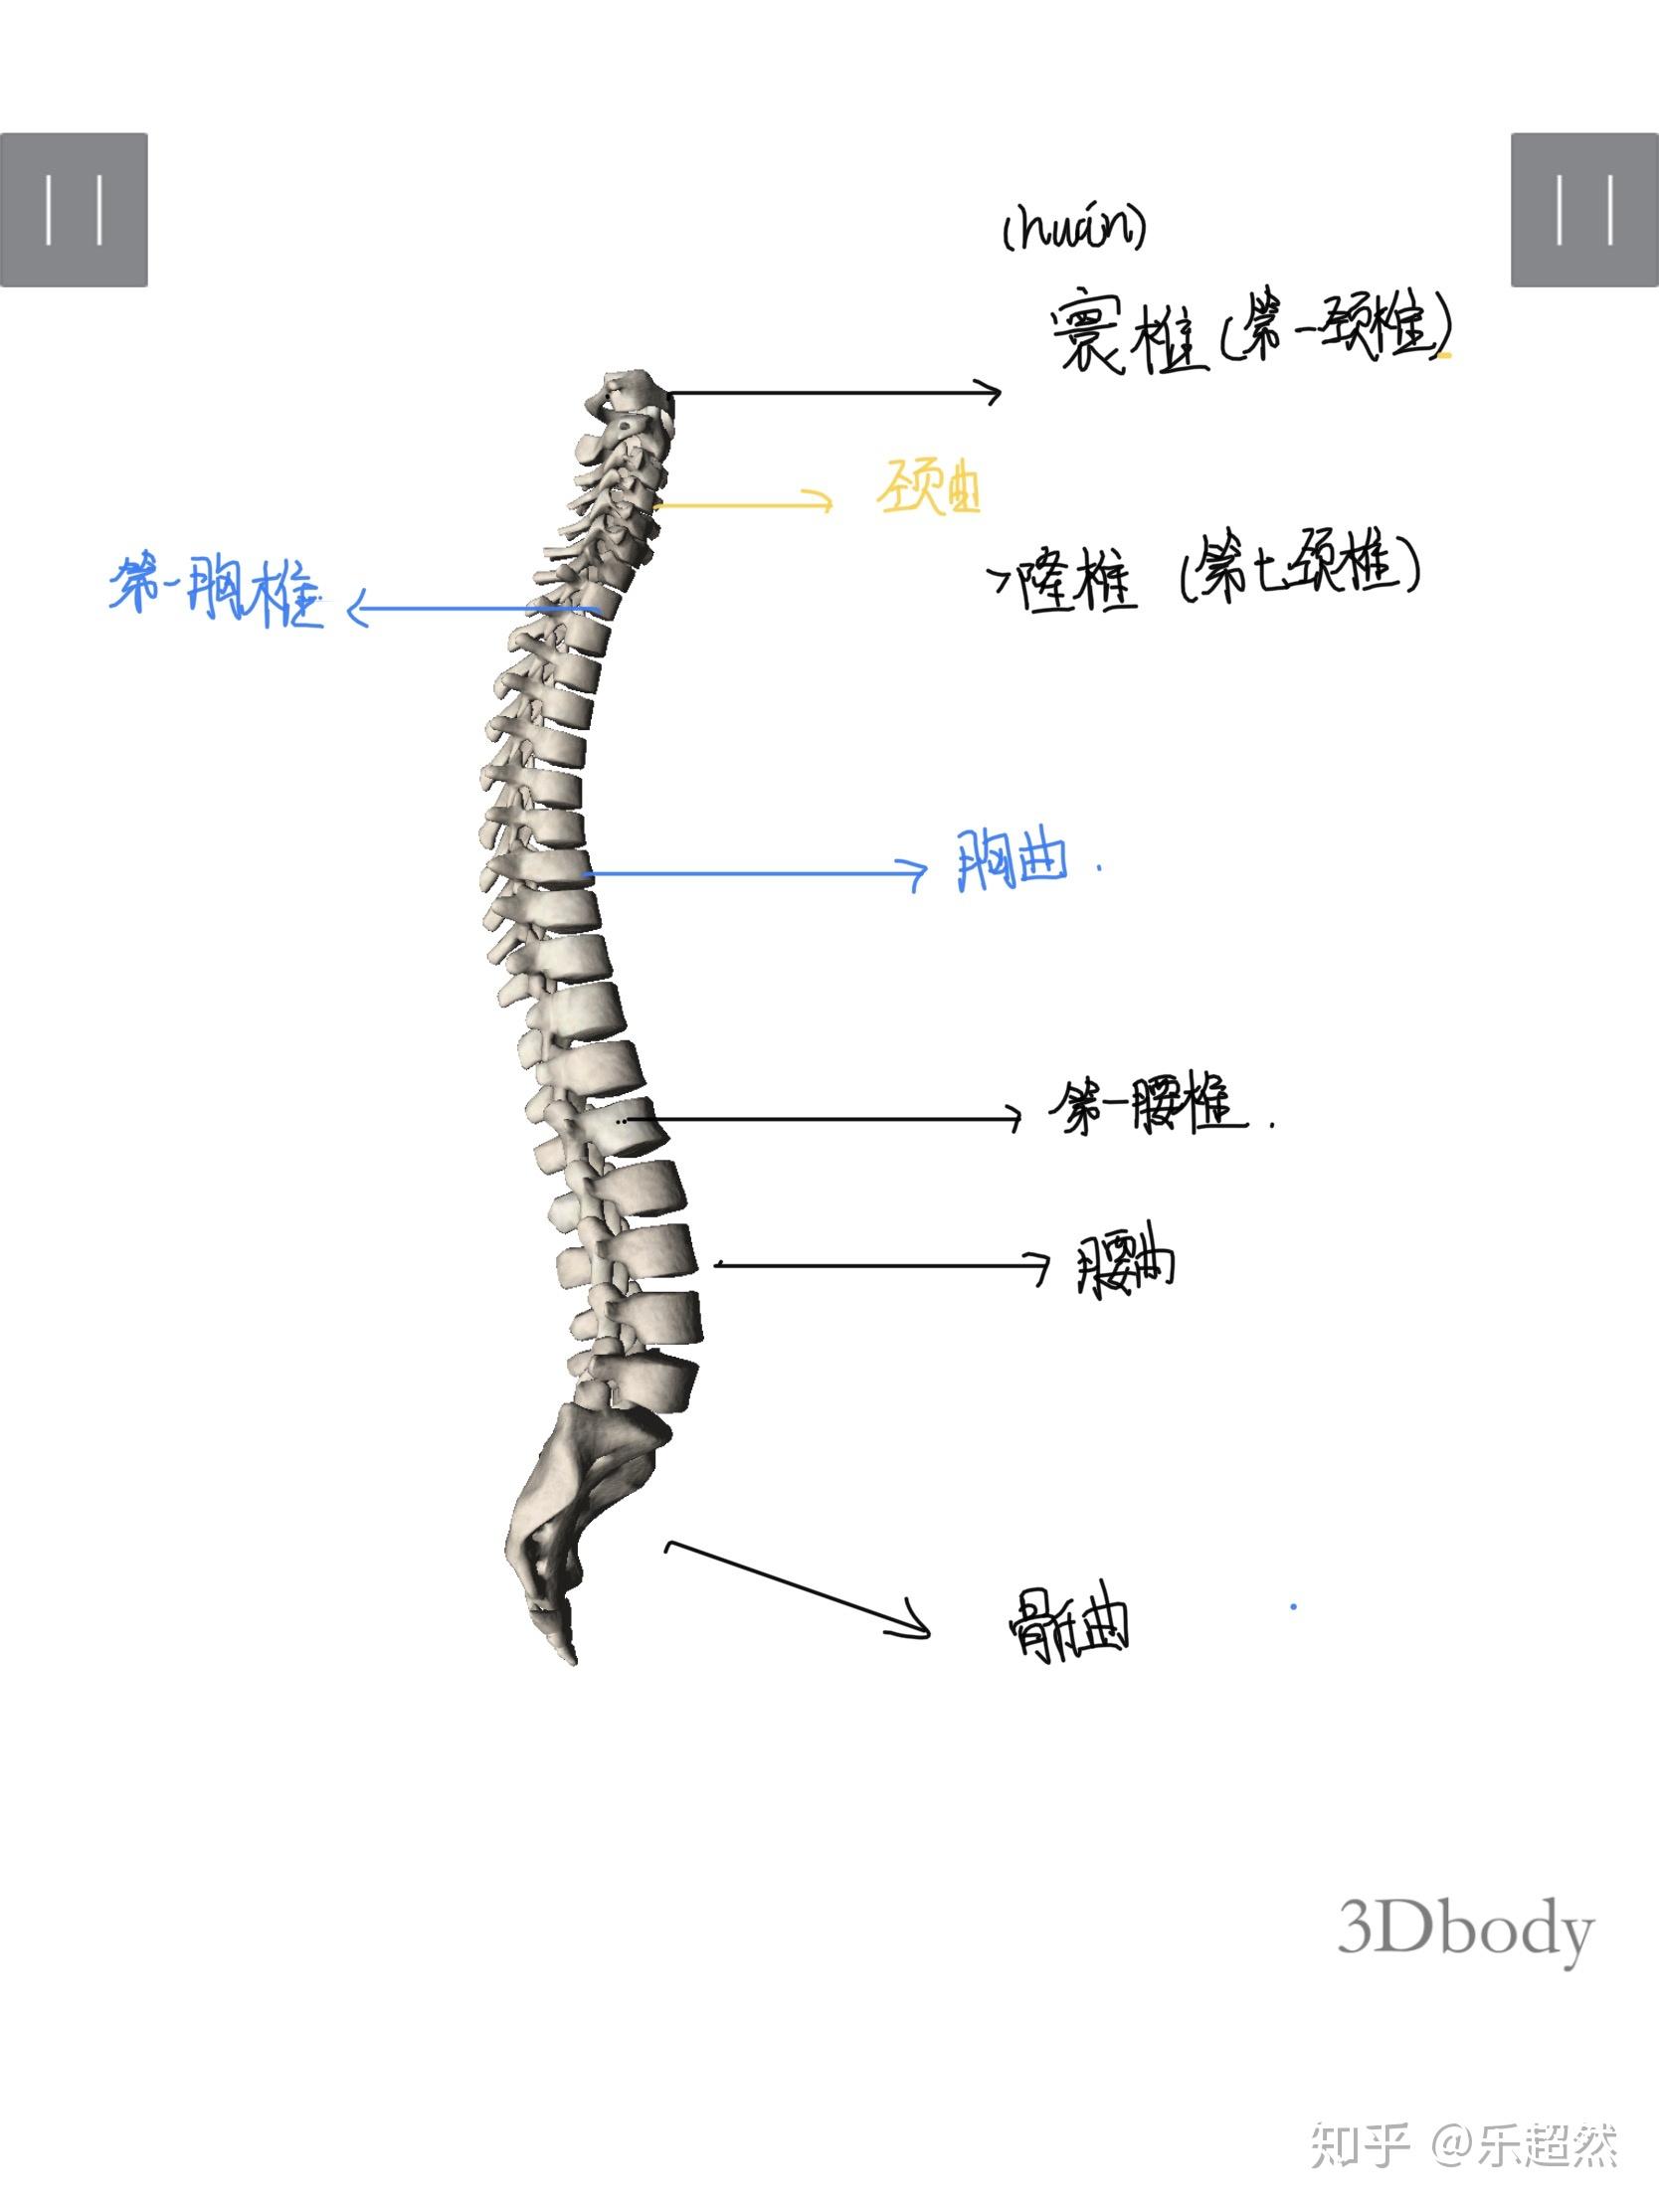 你了解我们人体的脊柱吗?